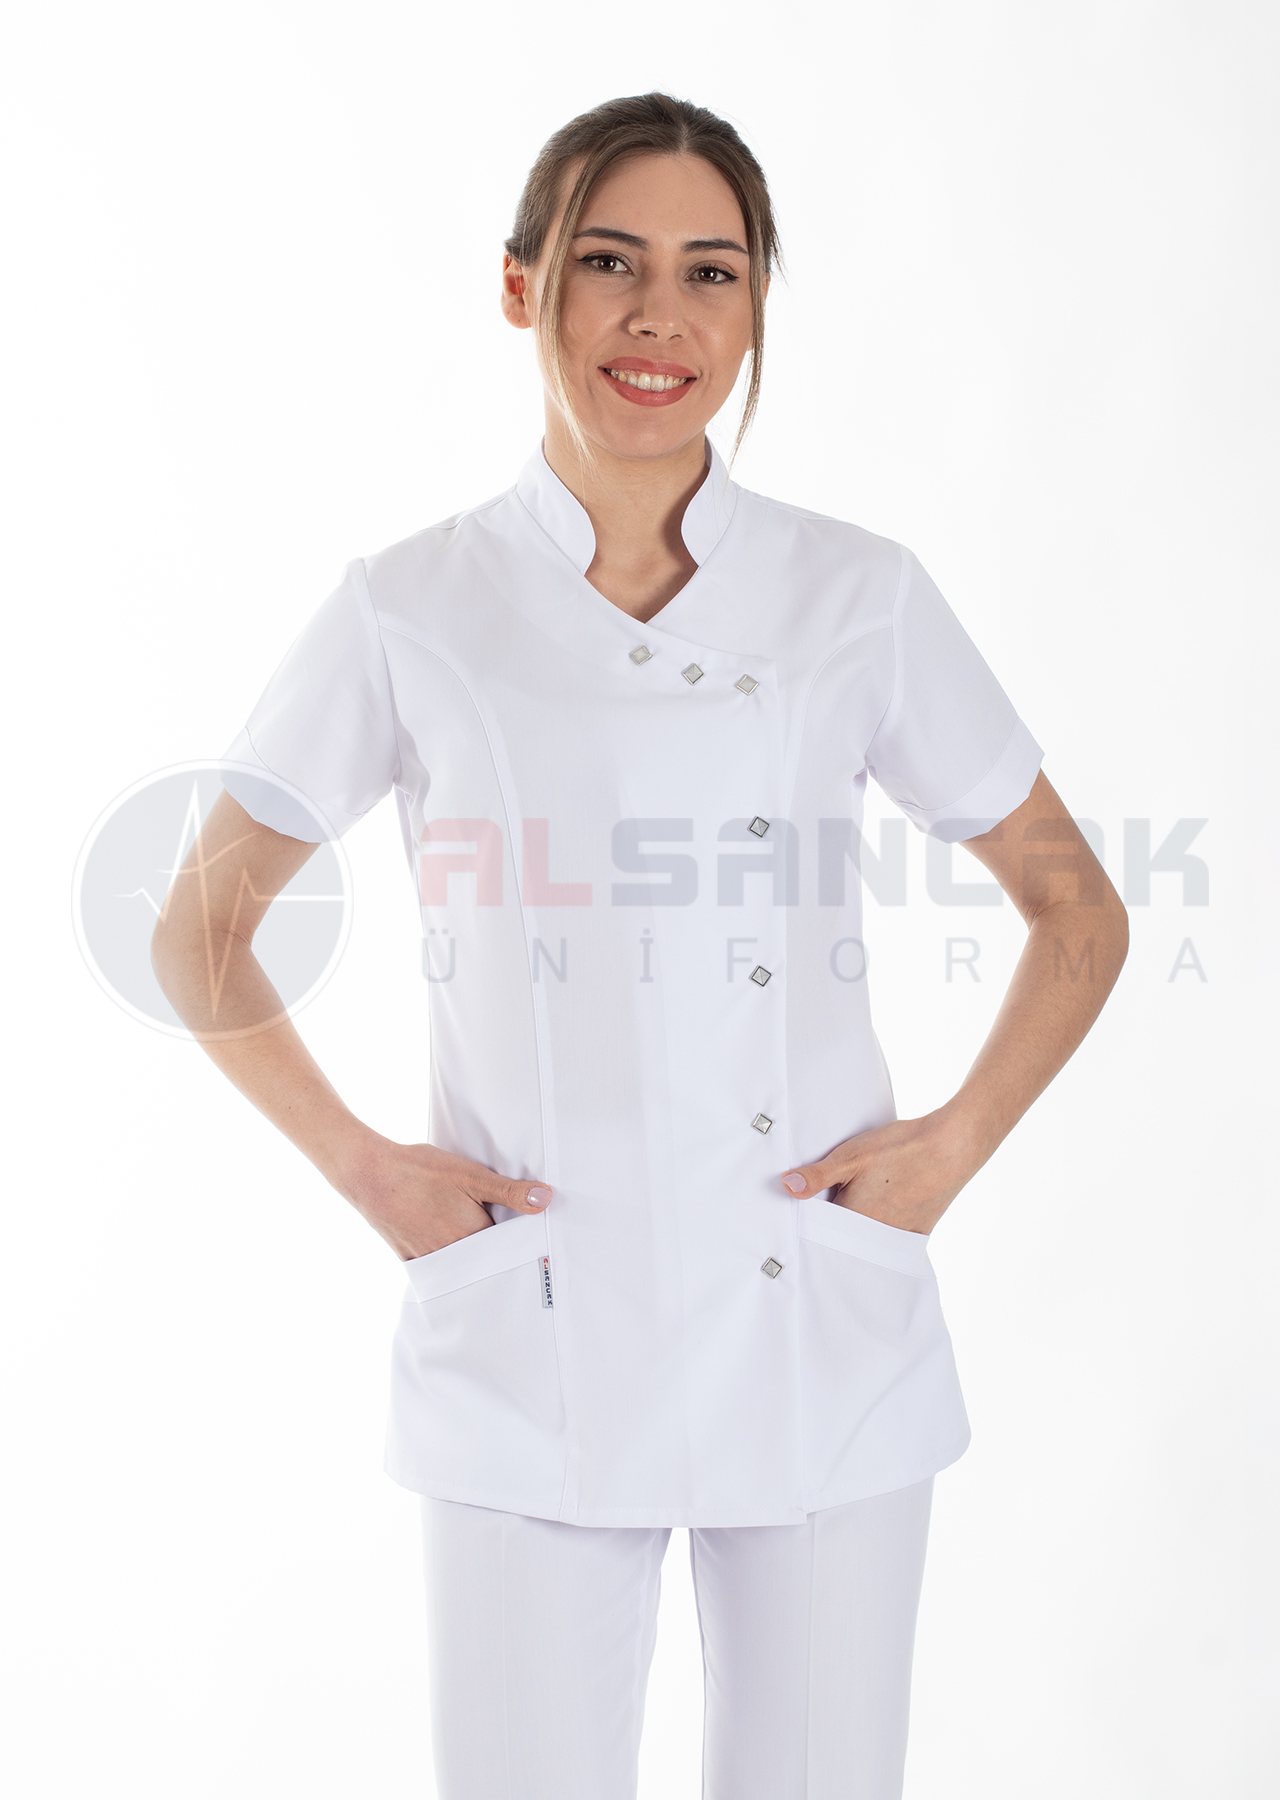 Luxe Model Hemşire ve Doktor Forması Takımı